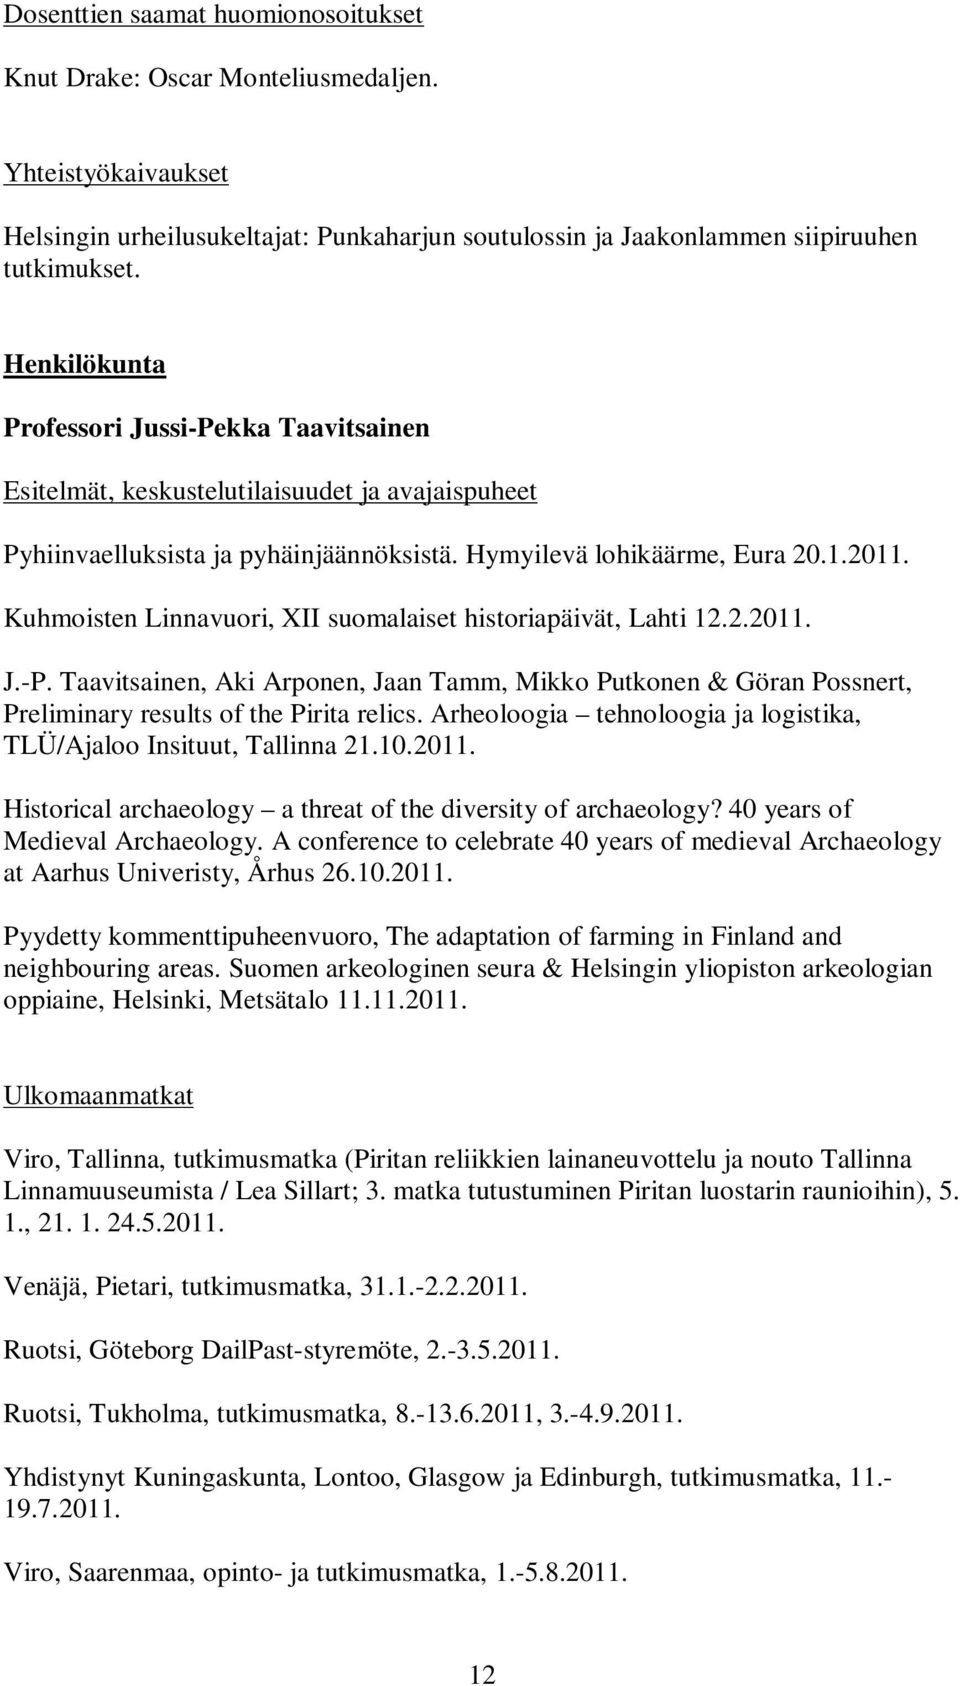 Kuhmoisten Linnavuori, XII suomalaiset historiapäivät, Lahti 12.2.2011. J.-P. Taavitsainen, Aki Arponen, Jaan Tamm, Mikko Putkonen & Göran Possnert, Preliminary results of the Pirita relics.